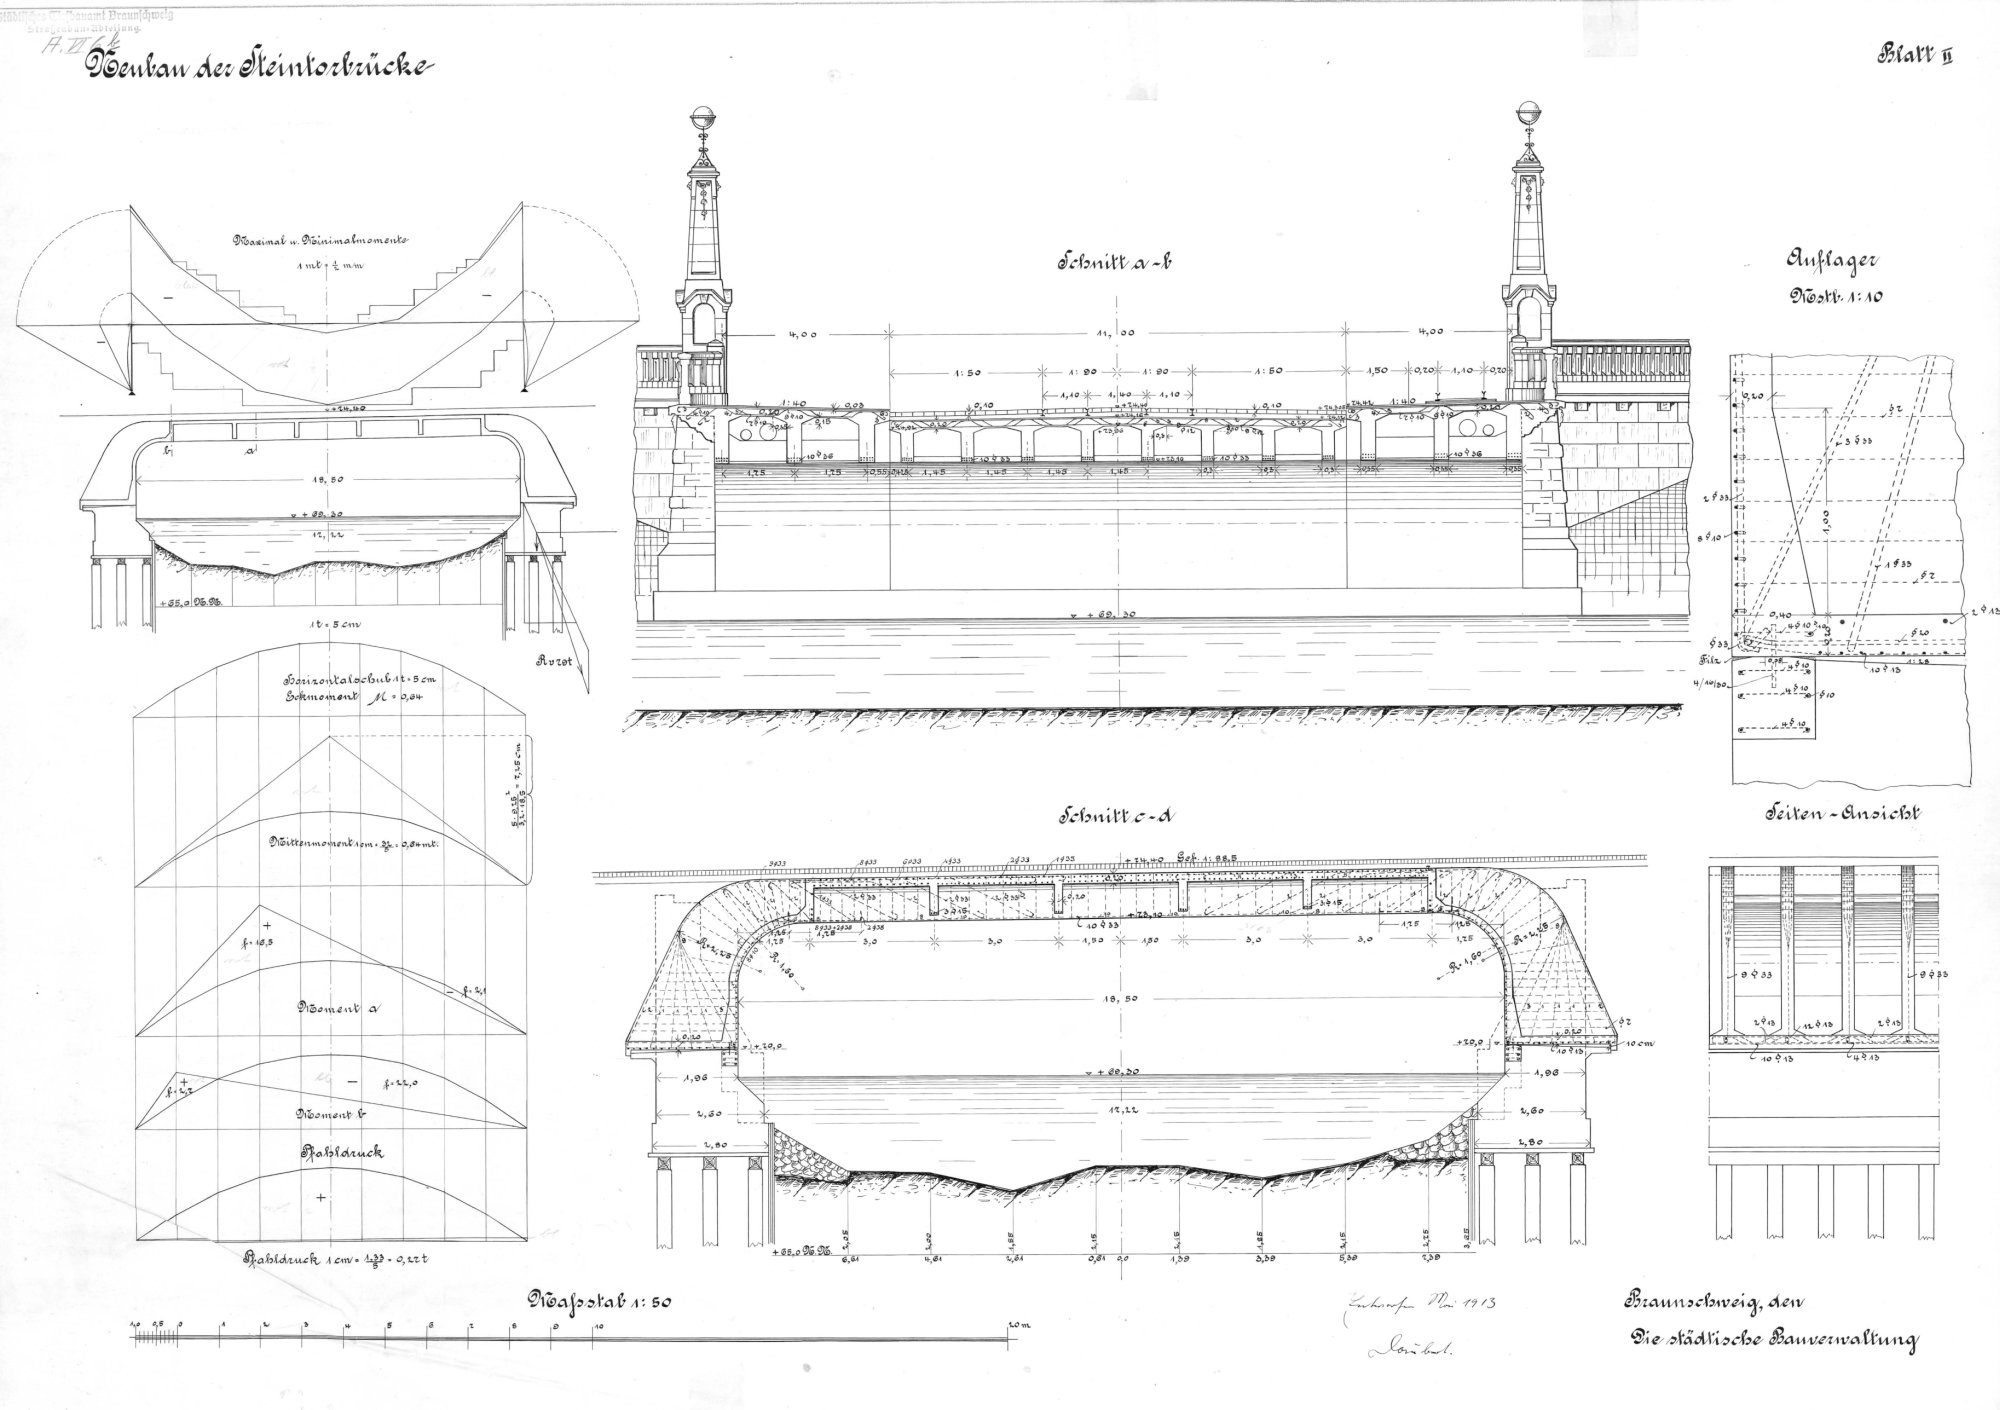 Steintorbrücke, Entwurfsplan, 1913, nicht ausgeführt